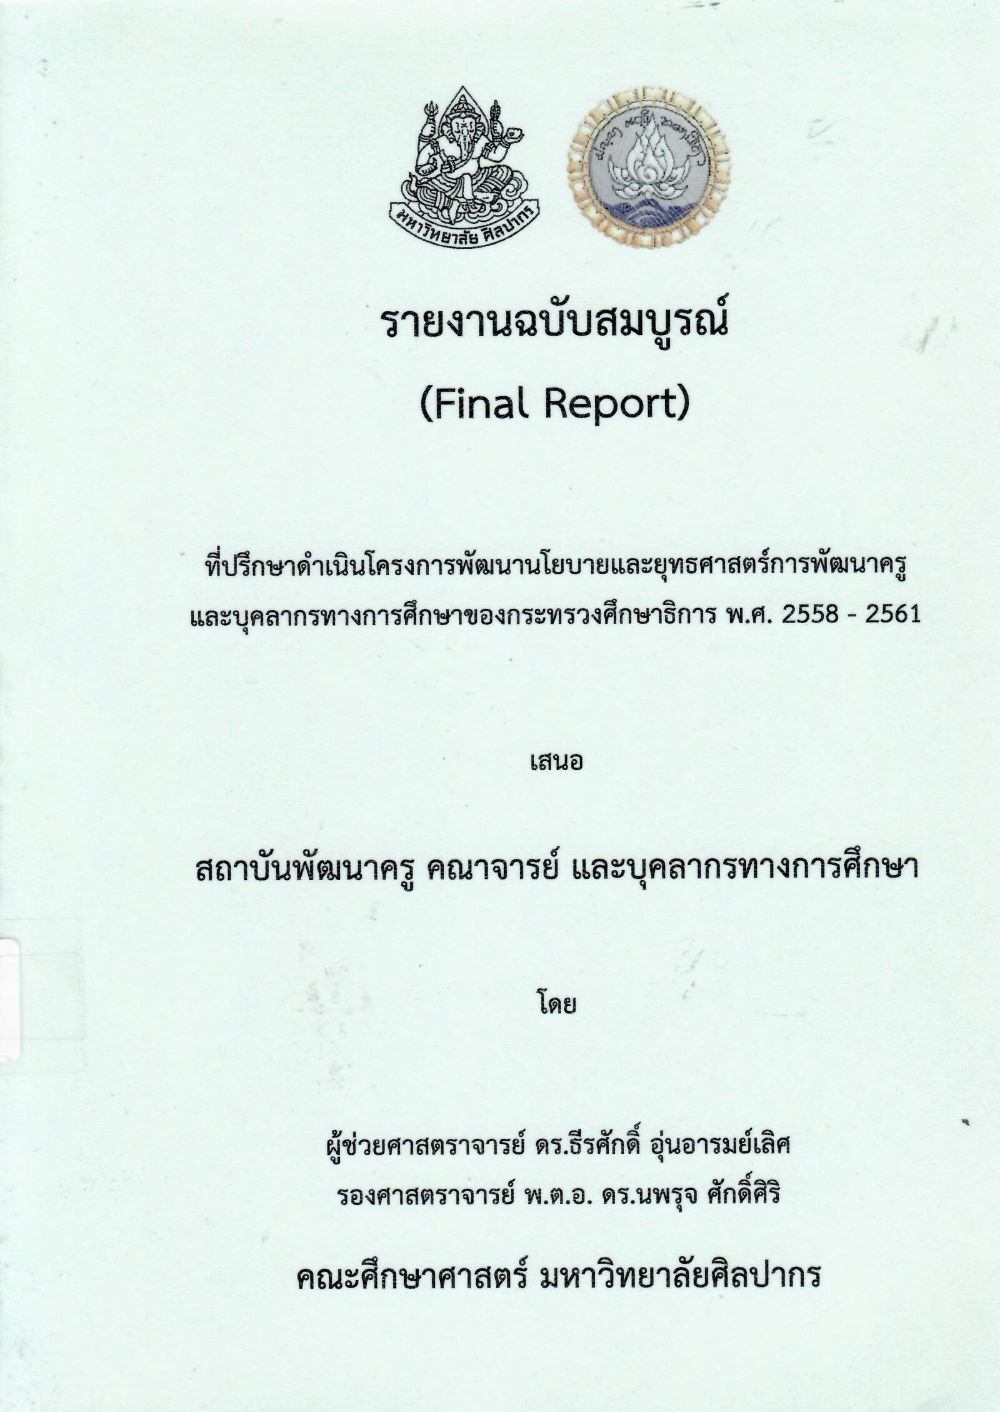 รายงานฉบับสมบูรณ์ (Final Report) ที่ปรึกษาโครงการพัฒนานโยบายและยุทธศาสตร์การพัฒนาครู และบุคลากรทางการศึกษาของกระทรวงศึกษาธิการ พ.ศ. 2558 - 2561/ ธีรศักดิ์ อุ่นอารมย์เลิศ และนพรุจ ศักดิ์ศิริ